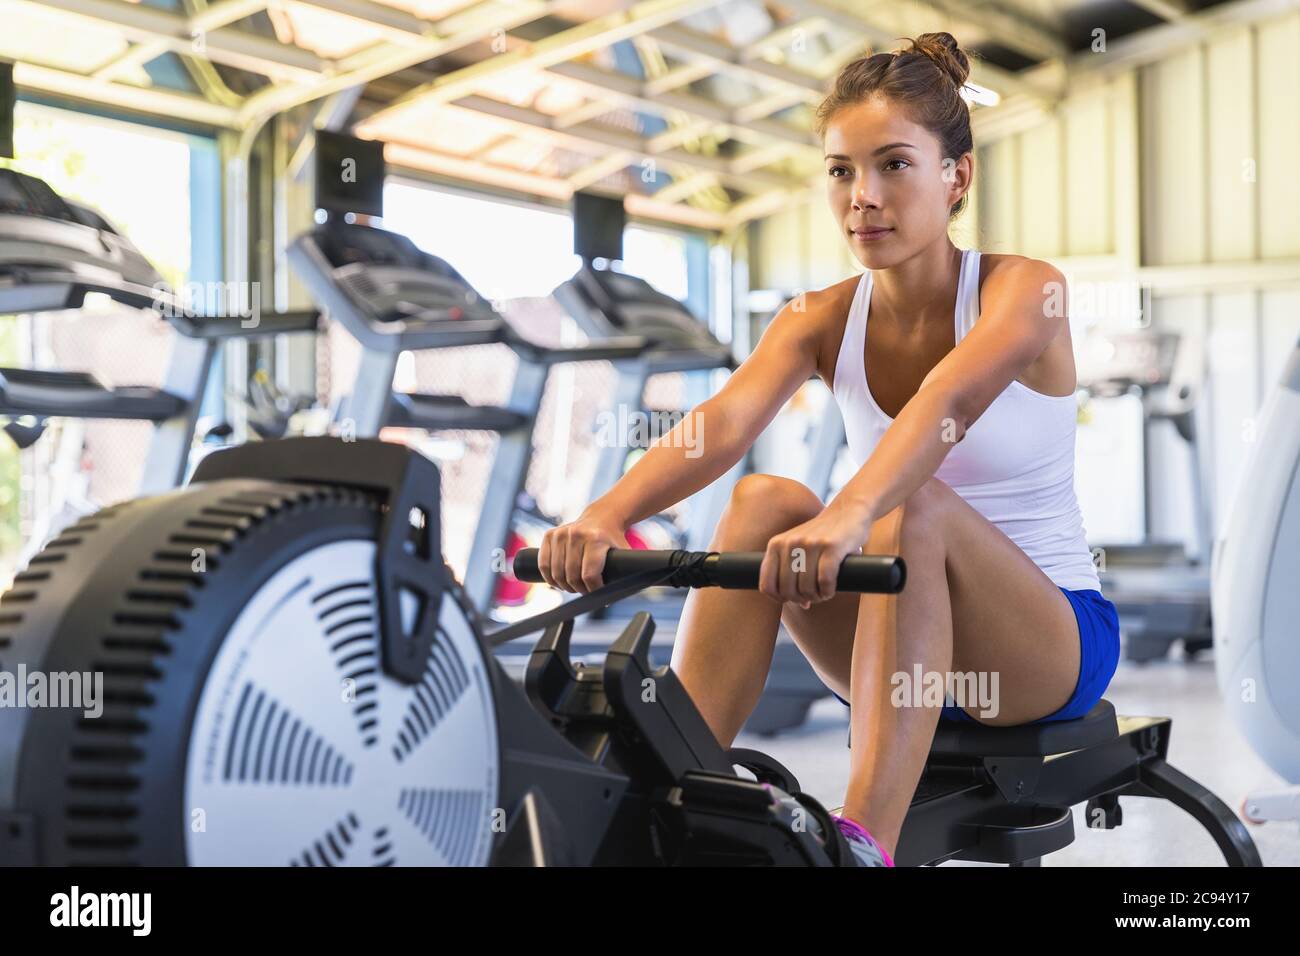 Workout Frau Crosstraining Cardio-Training mit Rudergerät in  Fitness-Studio. Asiatische Mädchen arbeiten aus Stockfotografie - Alamy